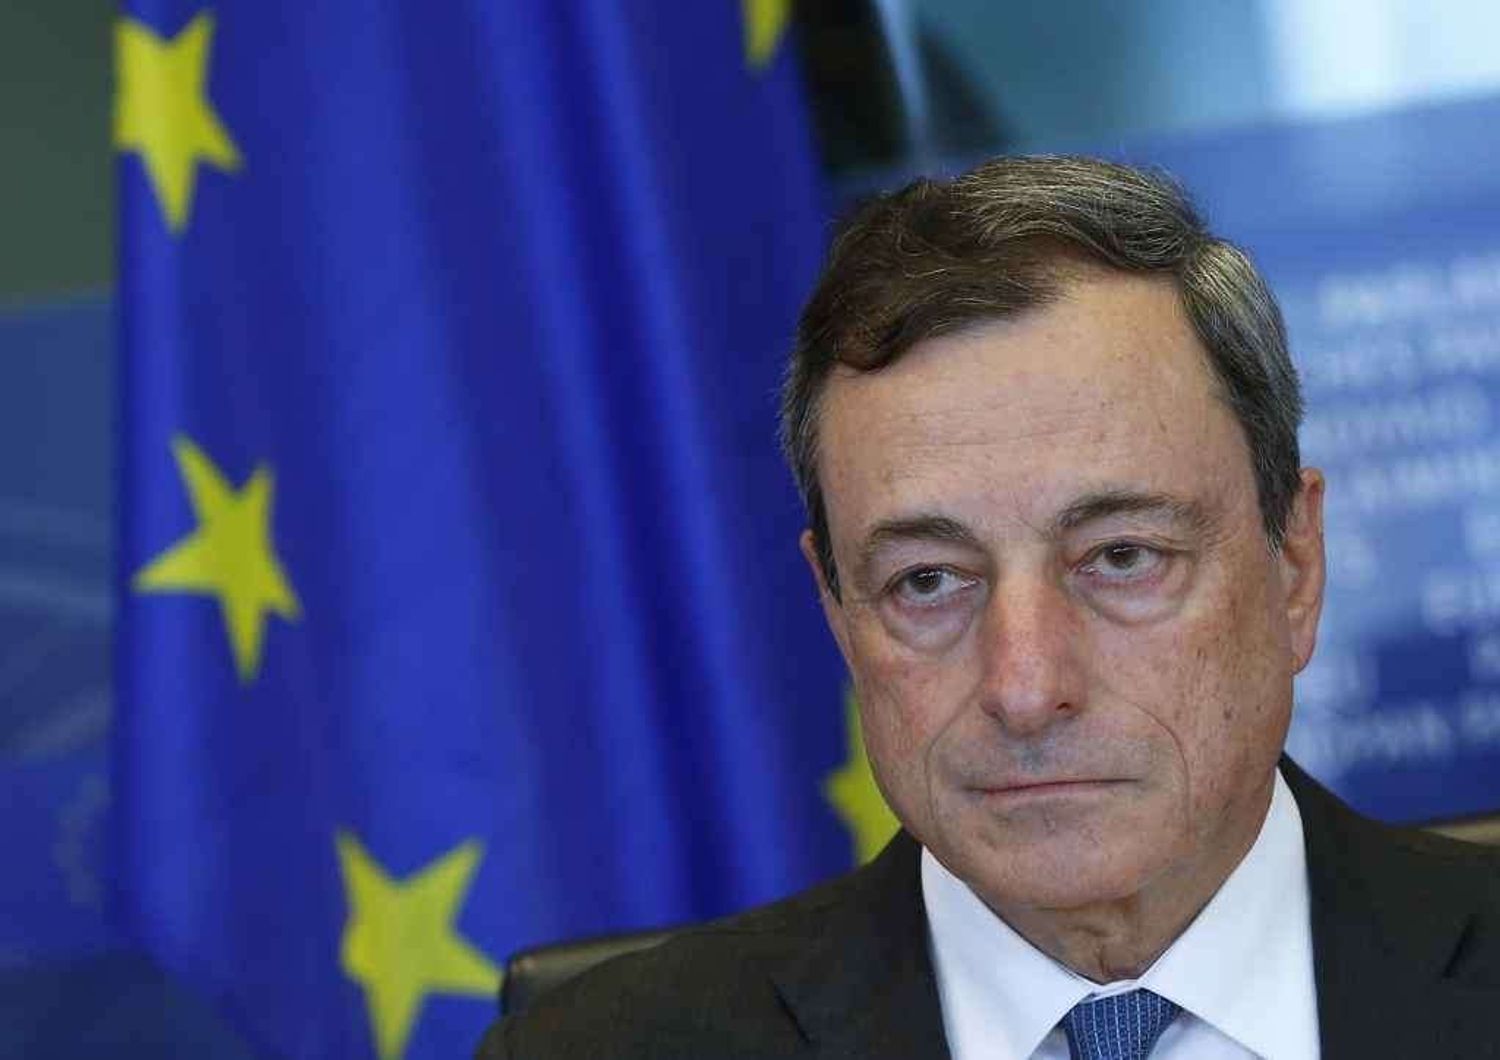 Debutta il 'bazooka' di DraghiSulle borse il peso della Grecia